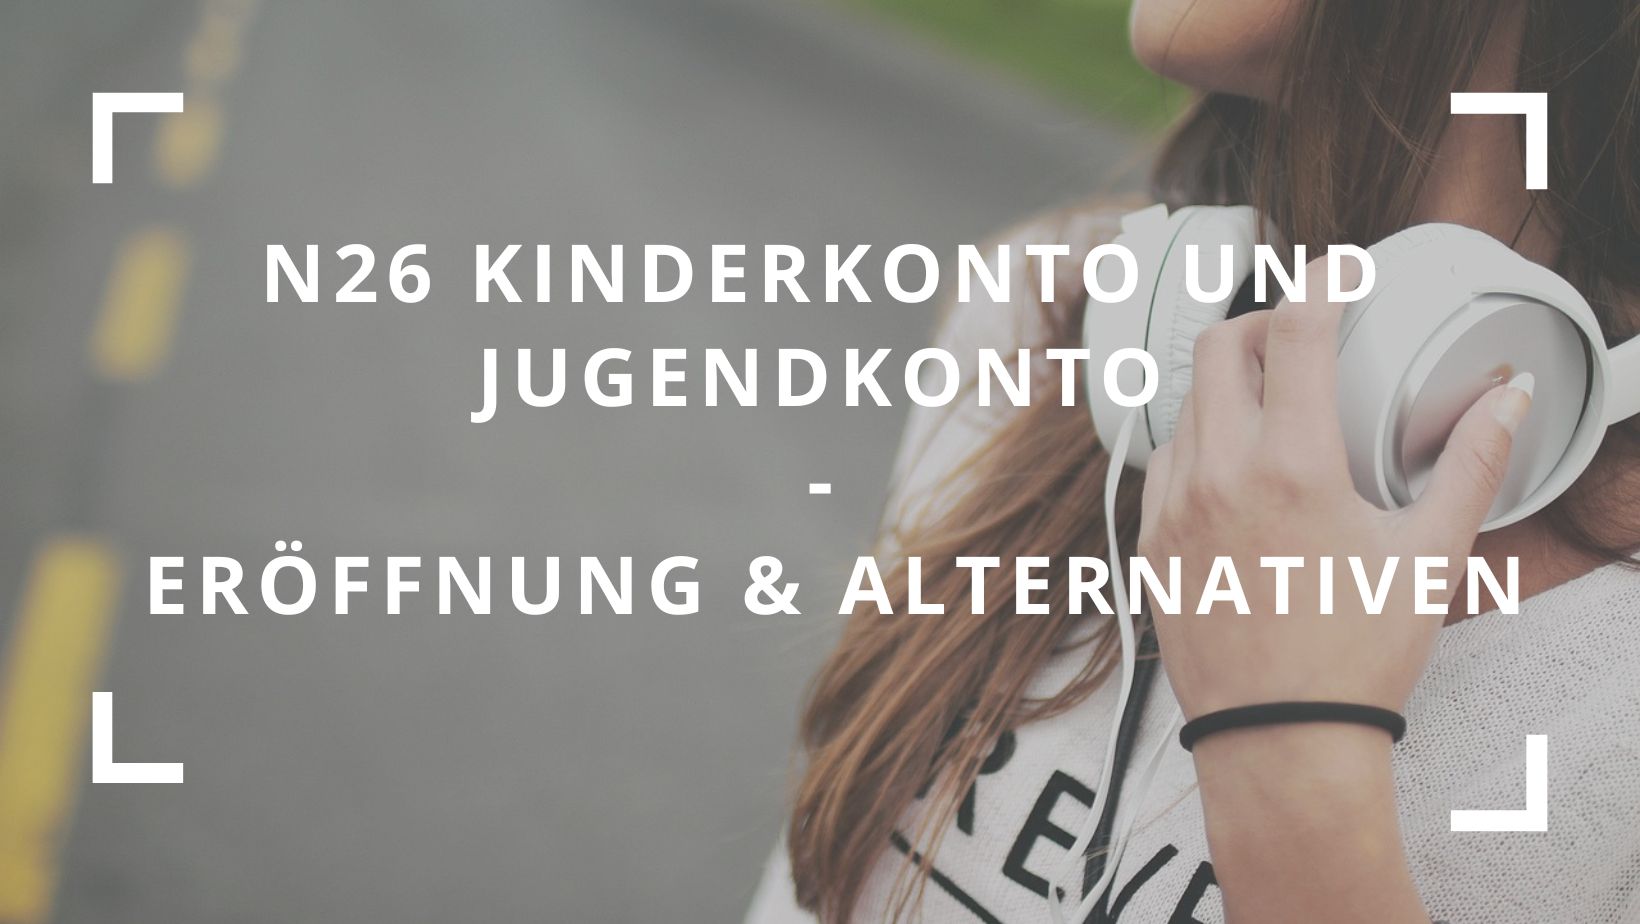 Titelbild zum Beitrag: "N26 Kinderkonto und Jugendkonto Eröffnung & Alternativen"